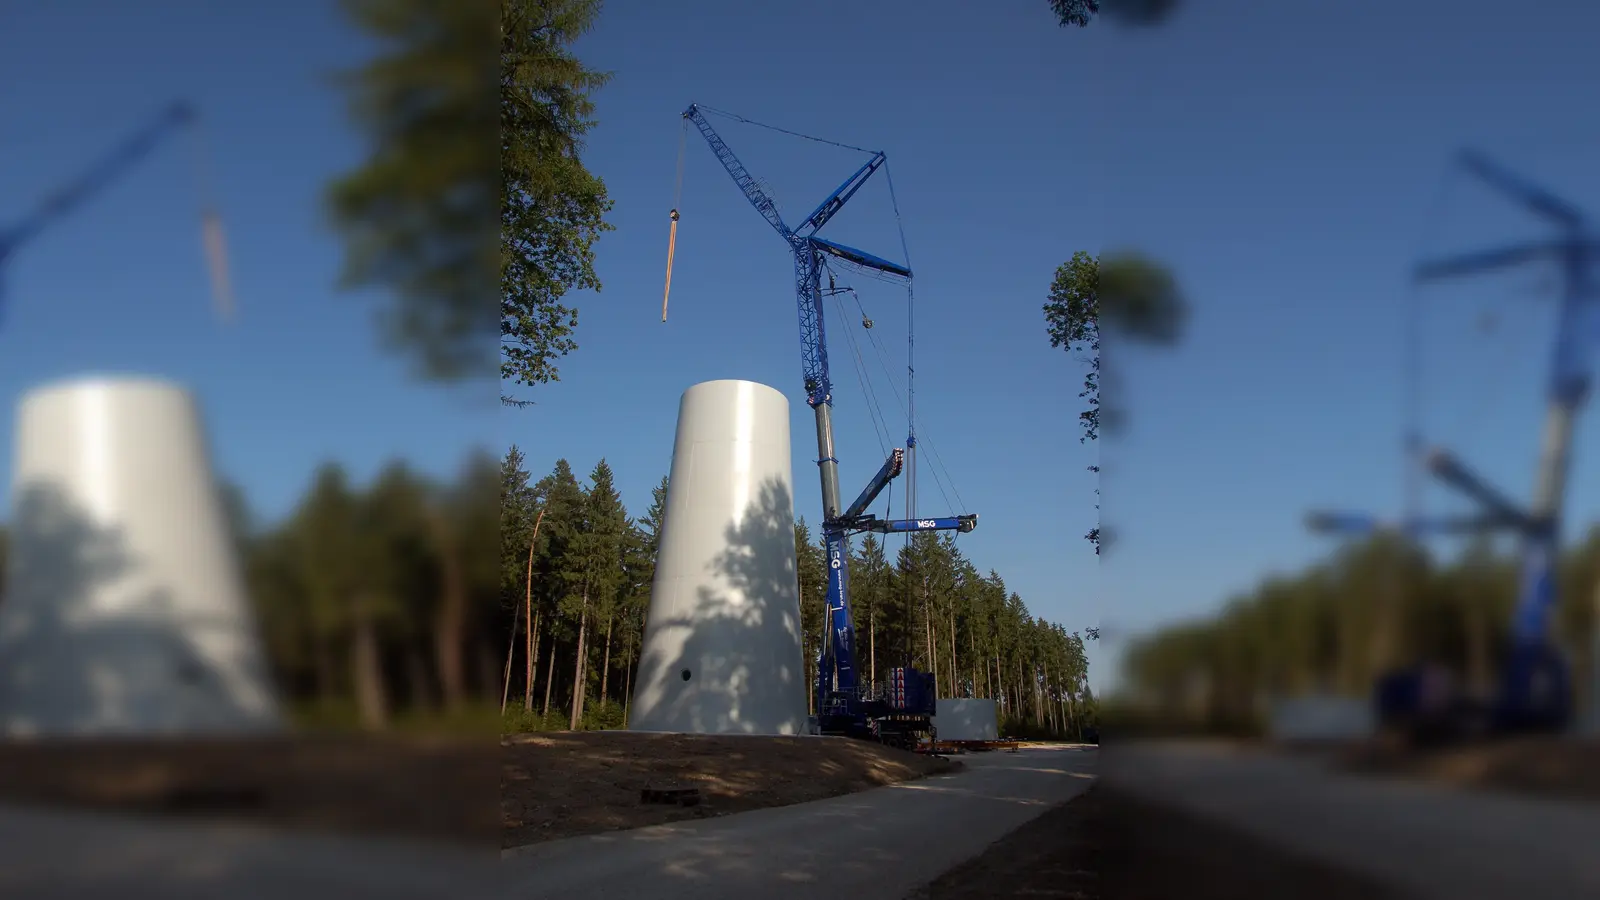 <b>2017 wurde</b> mit dem Bau des Baarer Windparks begonnen. Die Windkraftanlagen dort haben jeweils eine Gesamthöhe von 199 Metern. In der Scharnitz zwischen Kühbach und Peutenhausen werden die Windradeln 266 Meter in die Höhe rage ragen.<br><br>Baarer Windpark gewinnt an Höhe und ist bald weithin sichtbar<br>Thierhaupten/Baar. Ein reges Ausflugsziel für Spaziergänger und Fahrradfahrer ist seit Wochen die Baustelle des Baarer Windparks an der Landkreisgrenze Augsburg zu Donau-Ries. Nur wenige Meter von der Gemarkung Thierhaupten entfernt errichtet die Fa. Uhl aus Ellwangen auf der Gemarkung Unterbaar zwei Windenergieanlagen vom Typ Nordex N 117, die ab Oktober diesen Jahres mit ihrer Gesamtleistung von 6,0 MW rechnerisch 3.750 Haushalte mit Strom versorgen werden. Während bei der Windkraftanlage 2 bereits der Betonturm vollständig errichtet wurde, befinden sich die Bauarbeiten bei der ersten Anlage gerade im Anfangsstadium. Insgesamt werden Beton- und Stahlturm eine Gesamthöhe von 140,50 Meter erreichen. Zusammen mit den Rotorblättern werden die Windräder eine Gesamthöhe von 199 Metern erreichen und somit weithin auch im nördlichen Augsburger Land zu sehen sein. Der Windpark Baar, gegen den sich vor Jahren sogar ein Bürgerbegehren gerichtet hat, ist ein weiterer Beitrag zum Ausbau der erneuerbaren Energien. Die CO2-Einsparung beträgt den Berechnungen zufolge pro Jahr bei 10.200 Tonnen. Text/Bilder: Claus Braun<br><br>bra (Foto: Claus Braun)